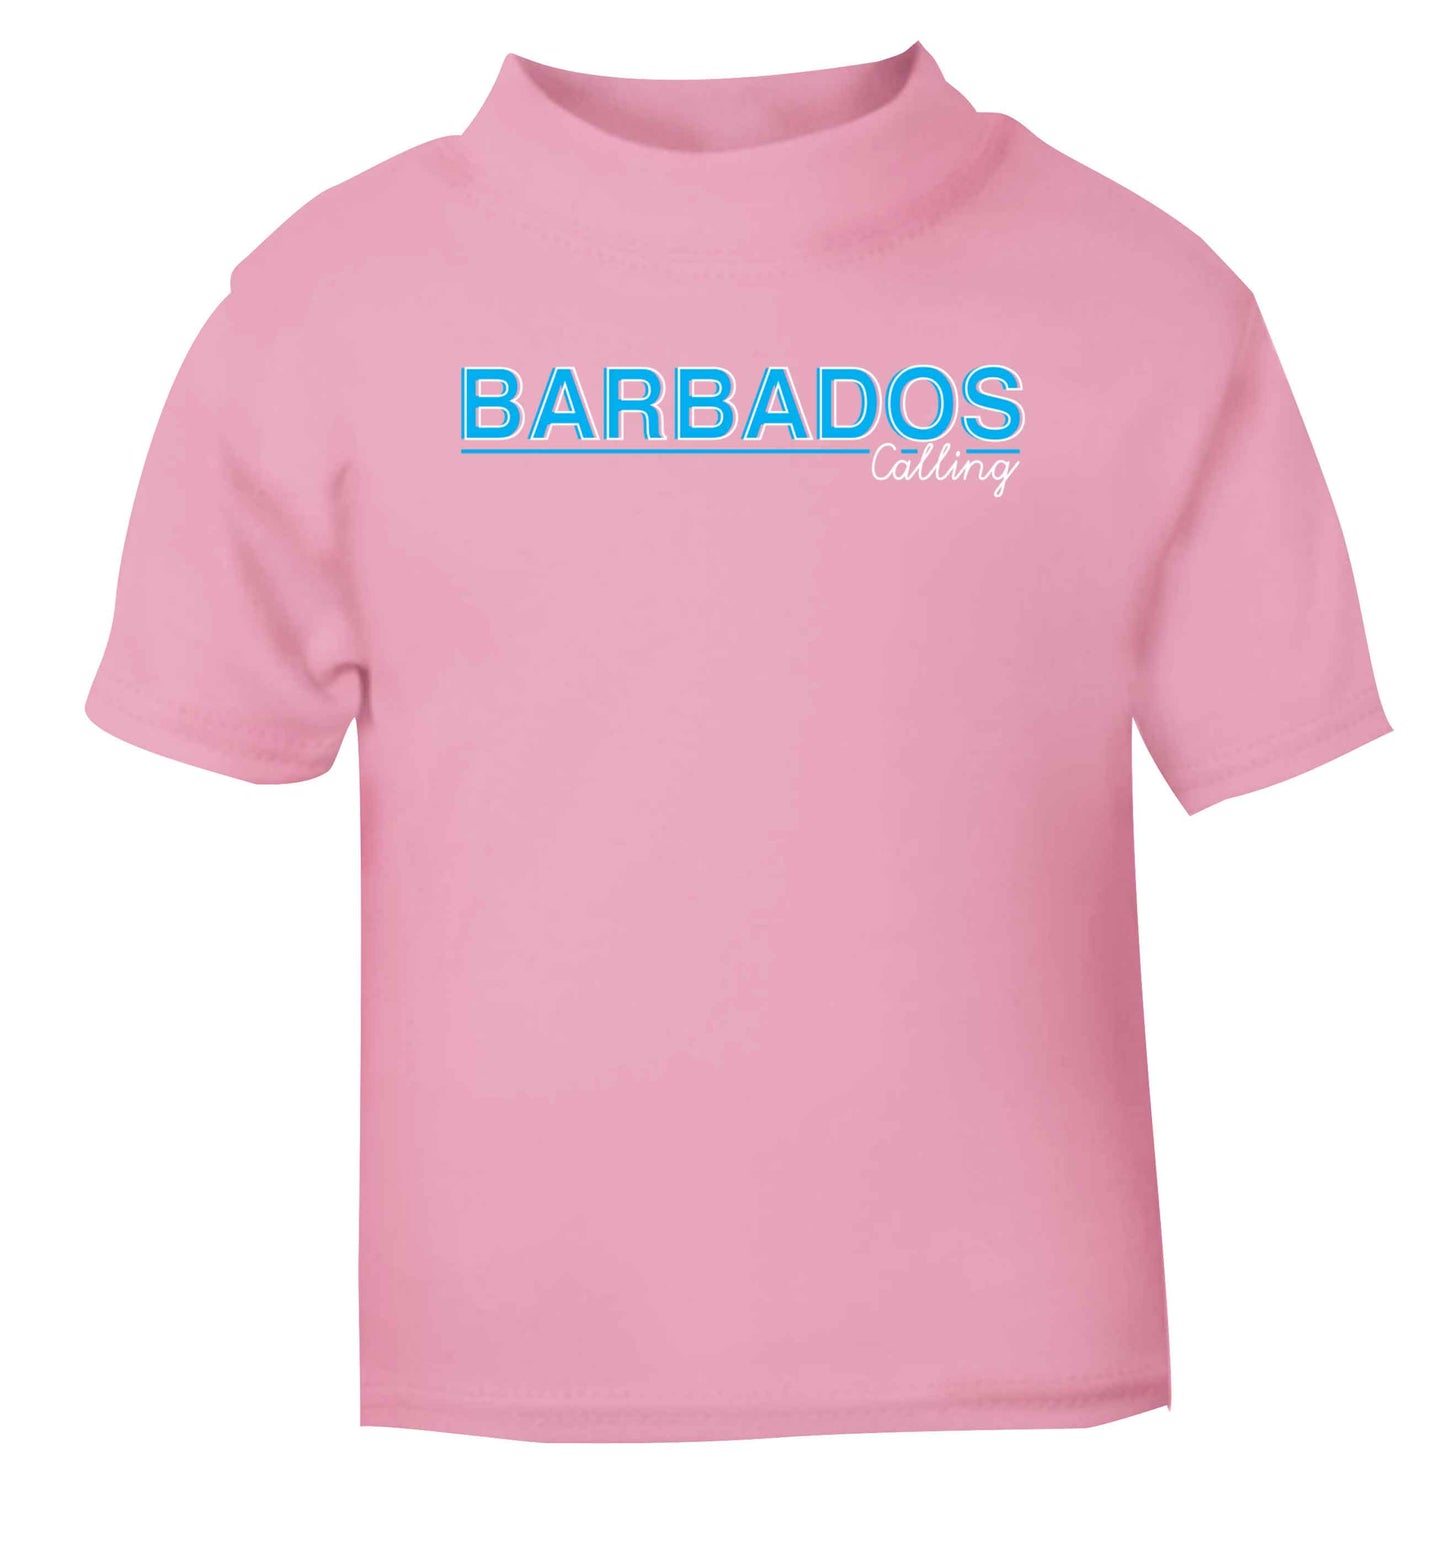 Barbados calling light pink Baby Toddler Tshirt 2 Years